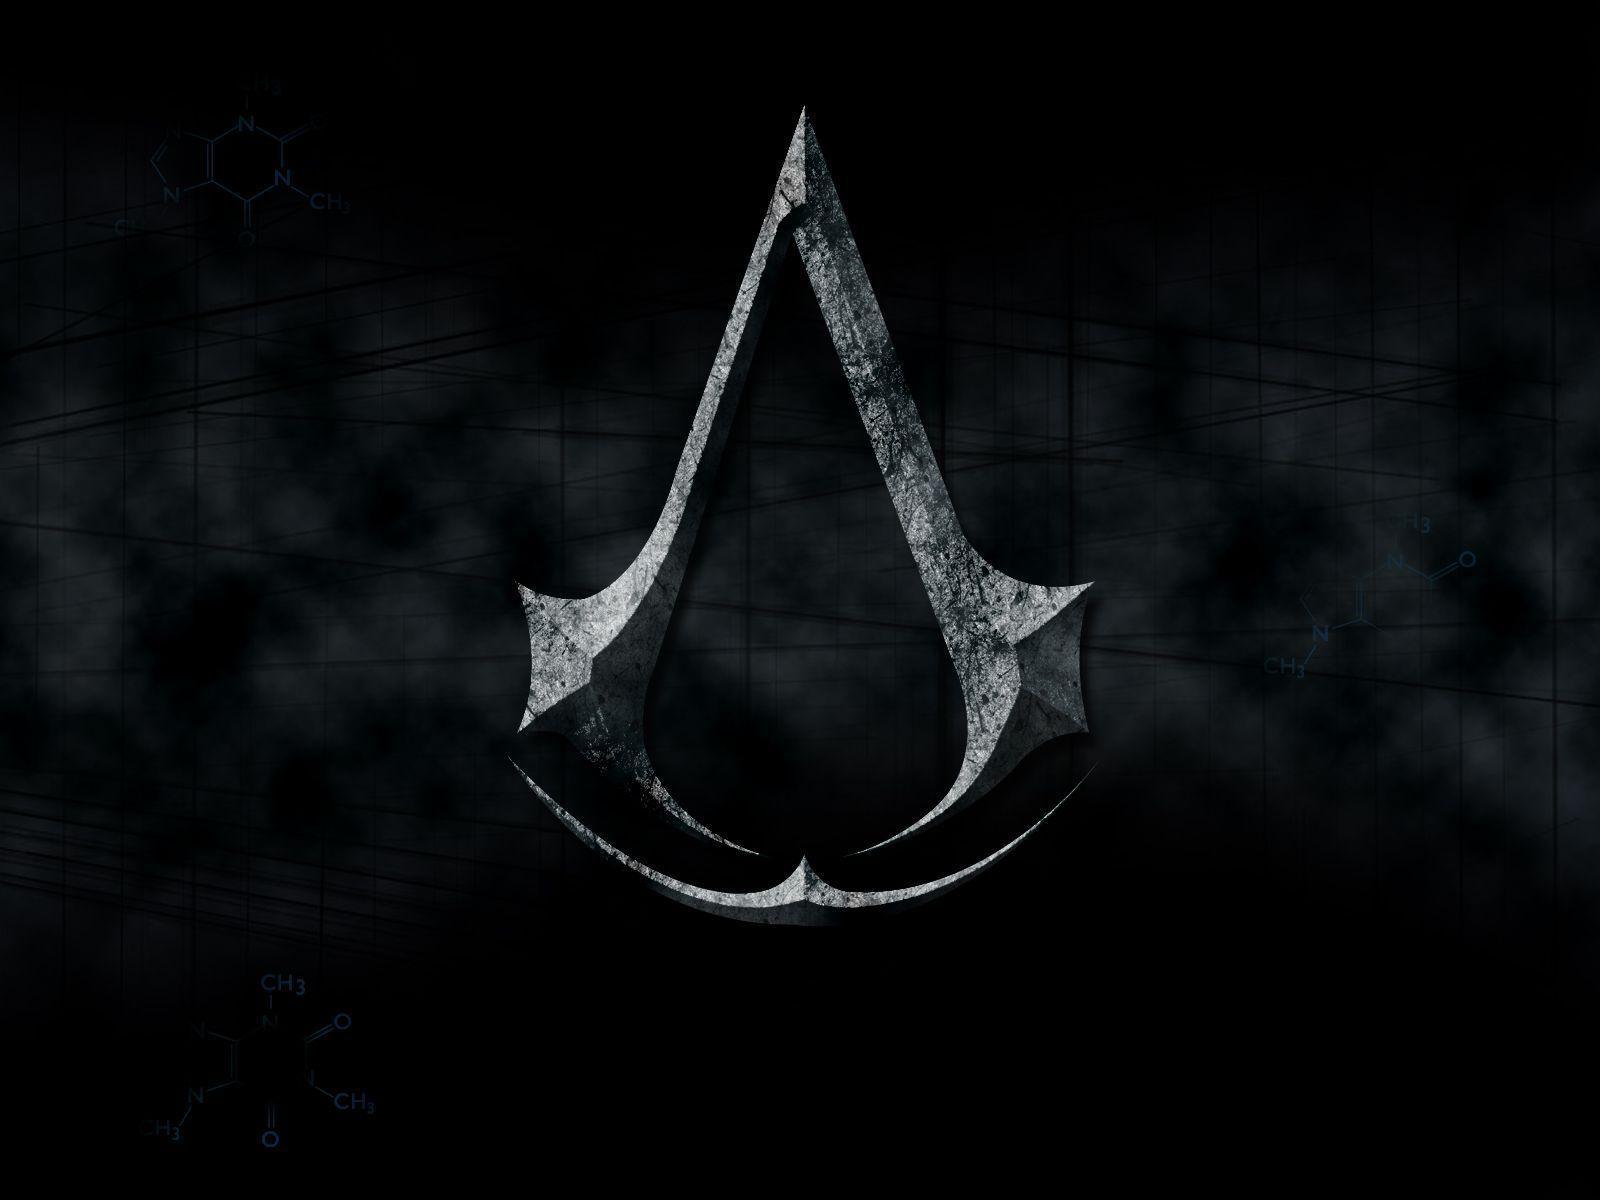 Assassin&;s Creed wallpaper